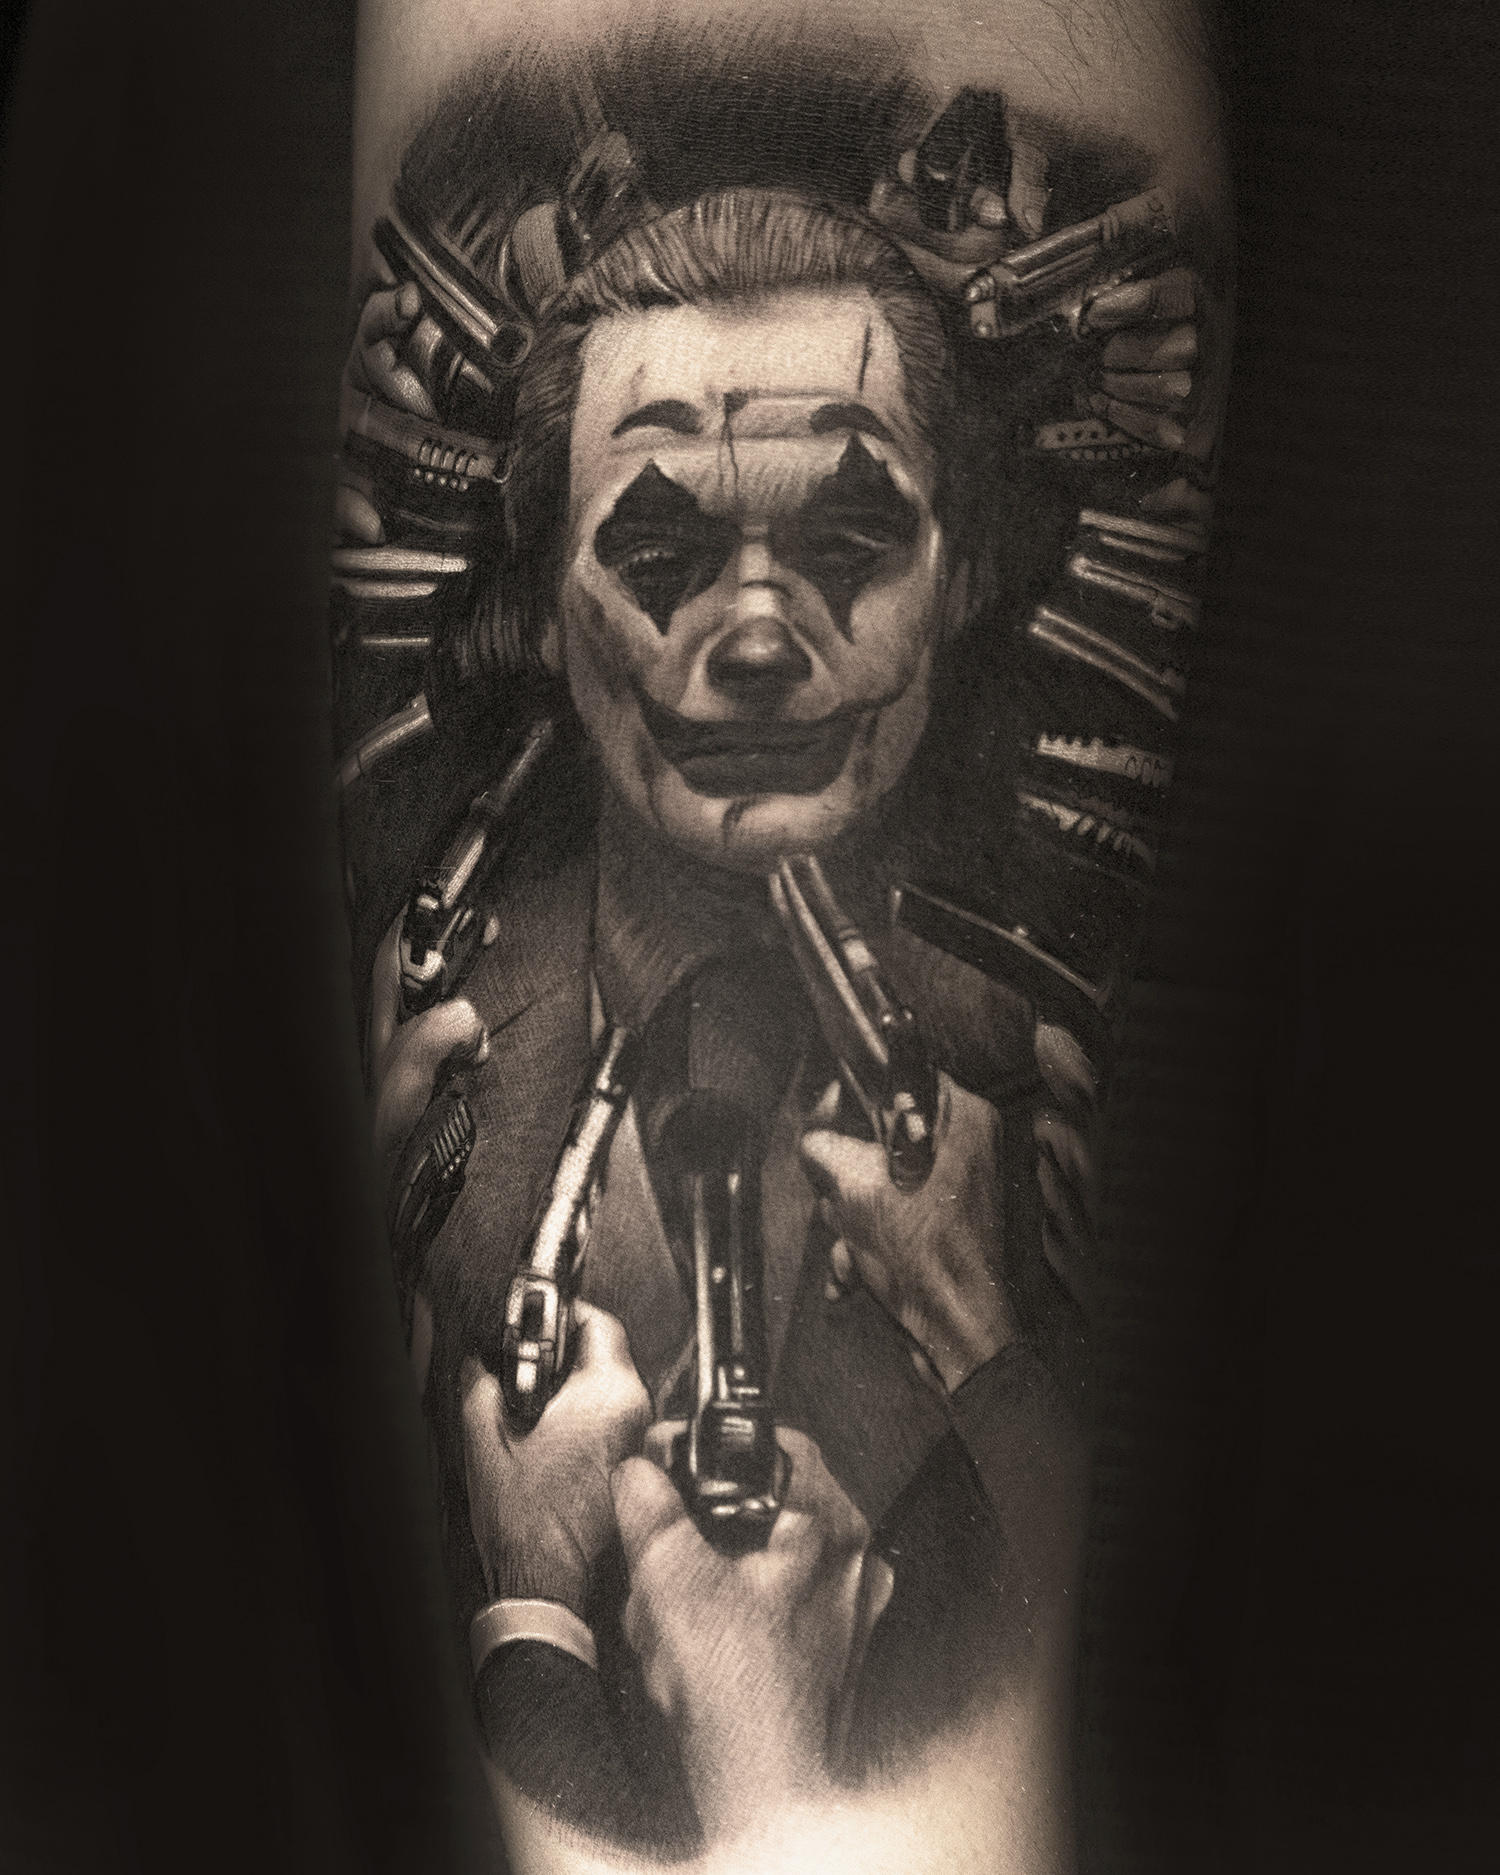 joker (joaquim phoenix) portrait tattoo by Denis "Tidan" Torikashvili , black and grey